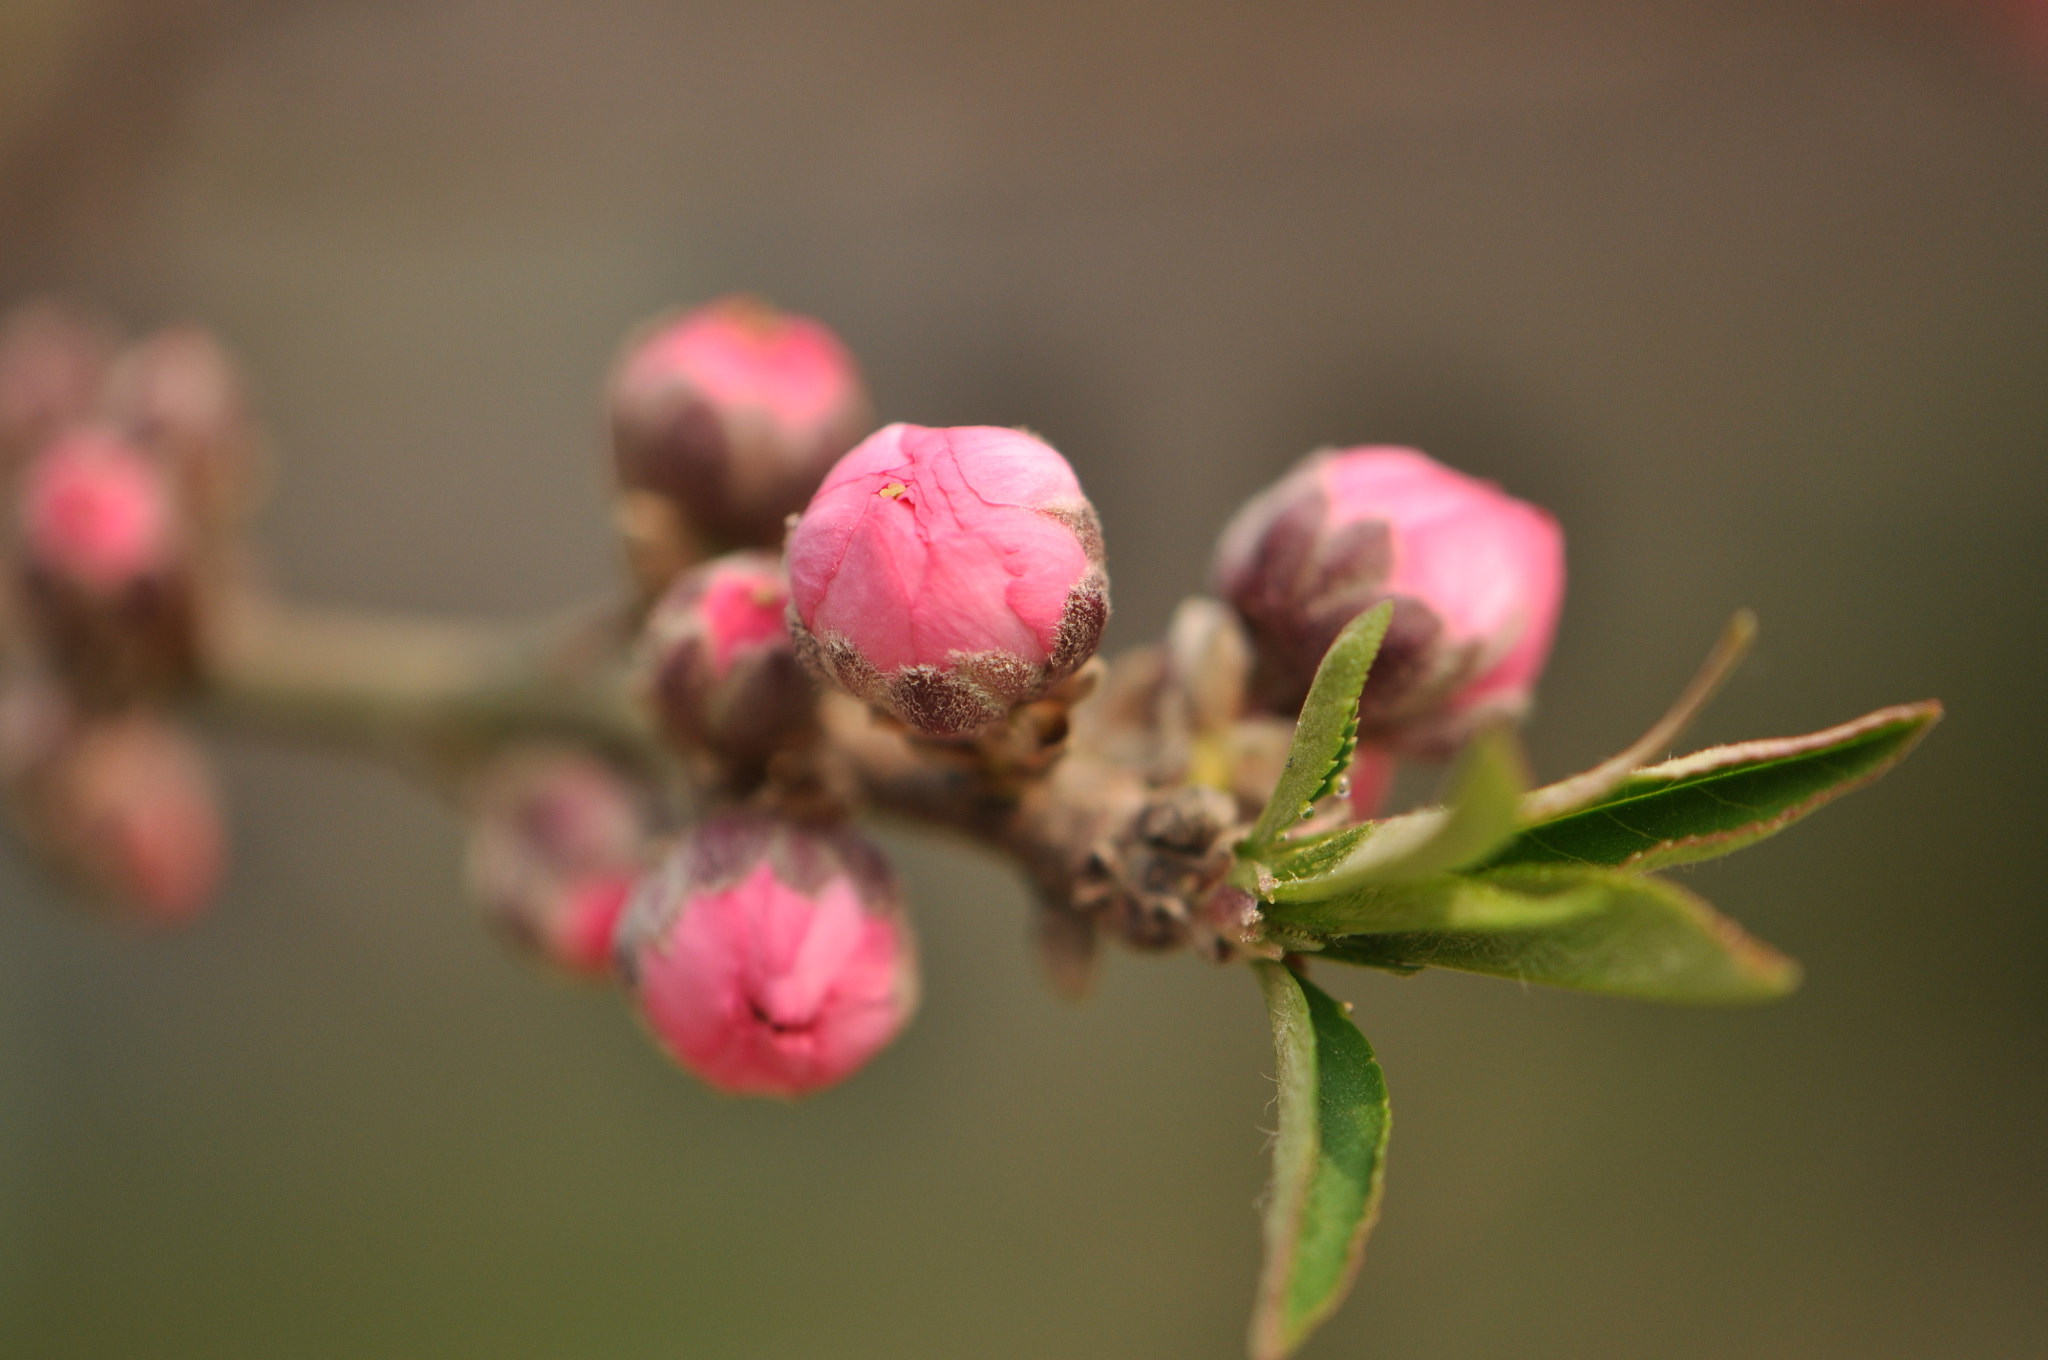 Nikon D90 + Nikon AF-S DX Micro-Nikkor 85mm F3.5G ED VR sample photo. Flora.spring.pink.flower photography